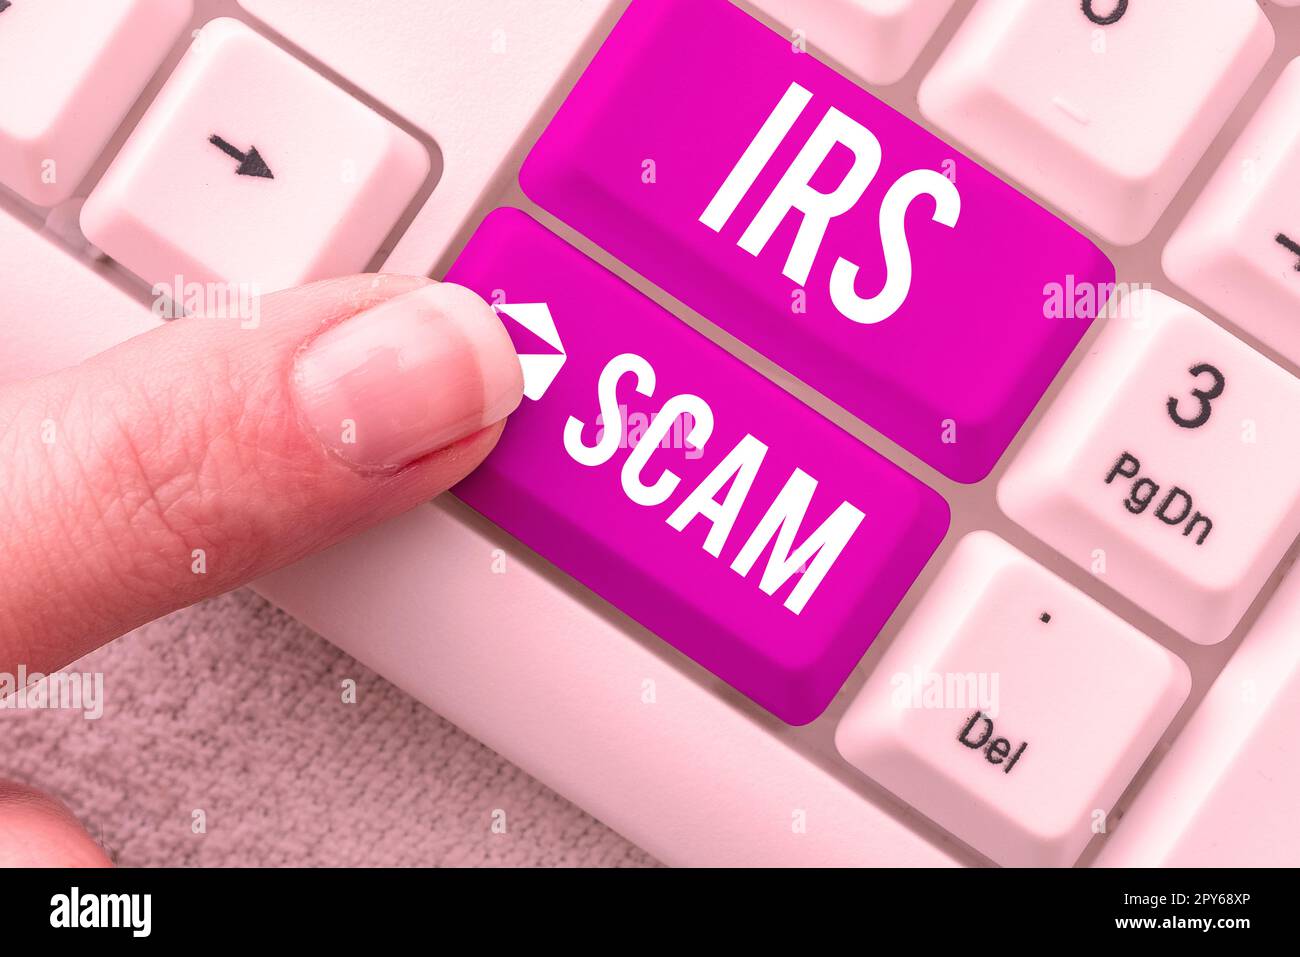 Konzeptionelle Bildunterschrift IRS Scam. Konzept, das Steuergelder gezielt anvisiert, indem es vorgibt, ein Internal Revenue Service zu sein Stockfoto